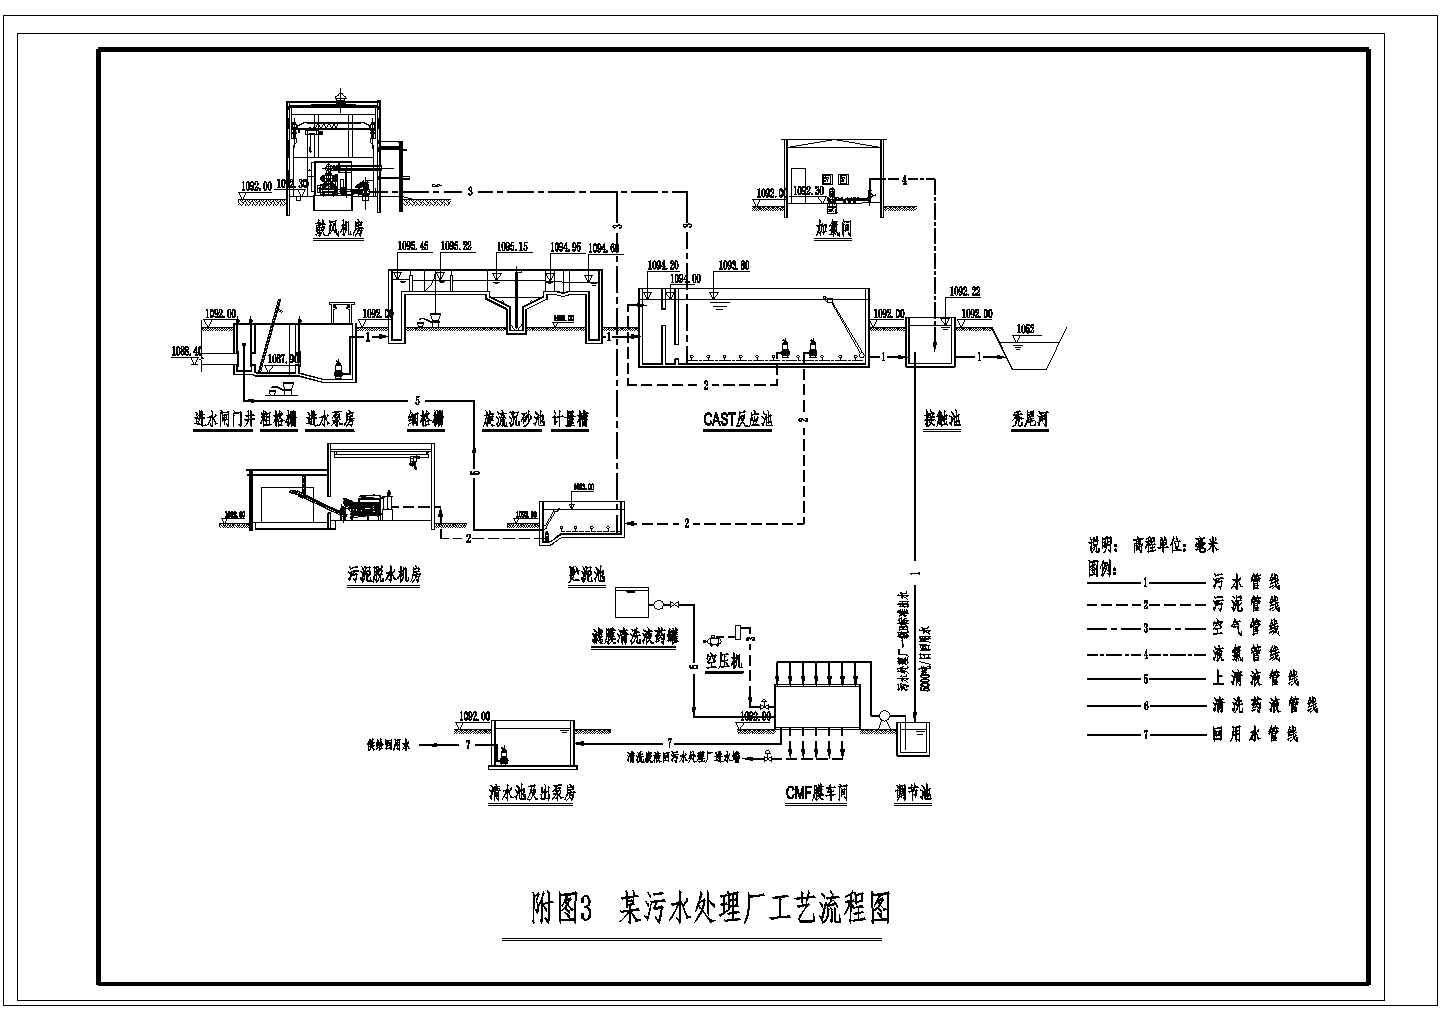 甘肃某1万吨污水处理厂工艺流程图CAD环保设计图纸